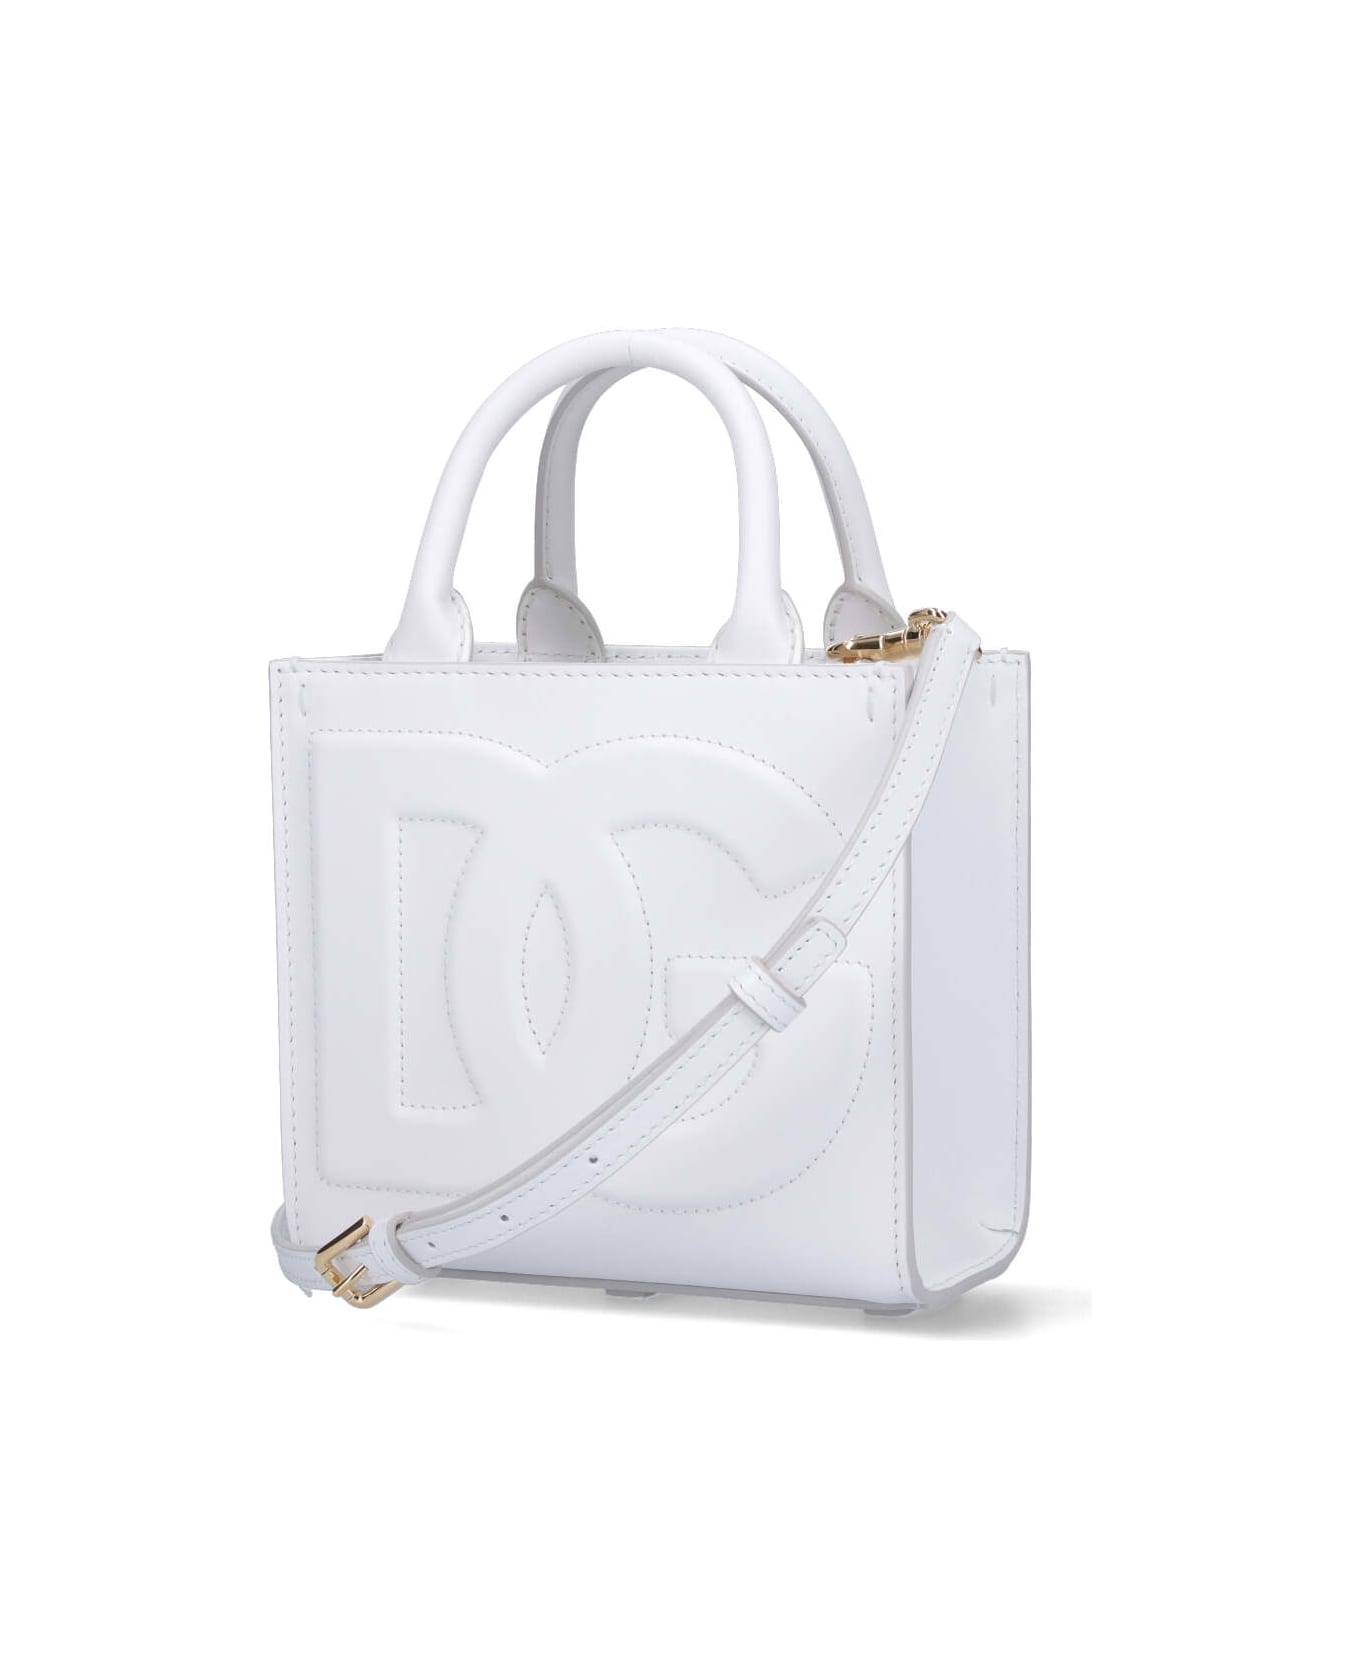 Dolce & Gabbana 'dg' Mini Tote - White